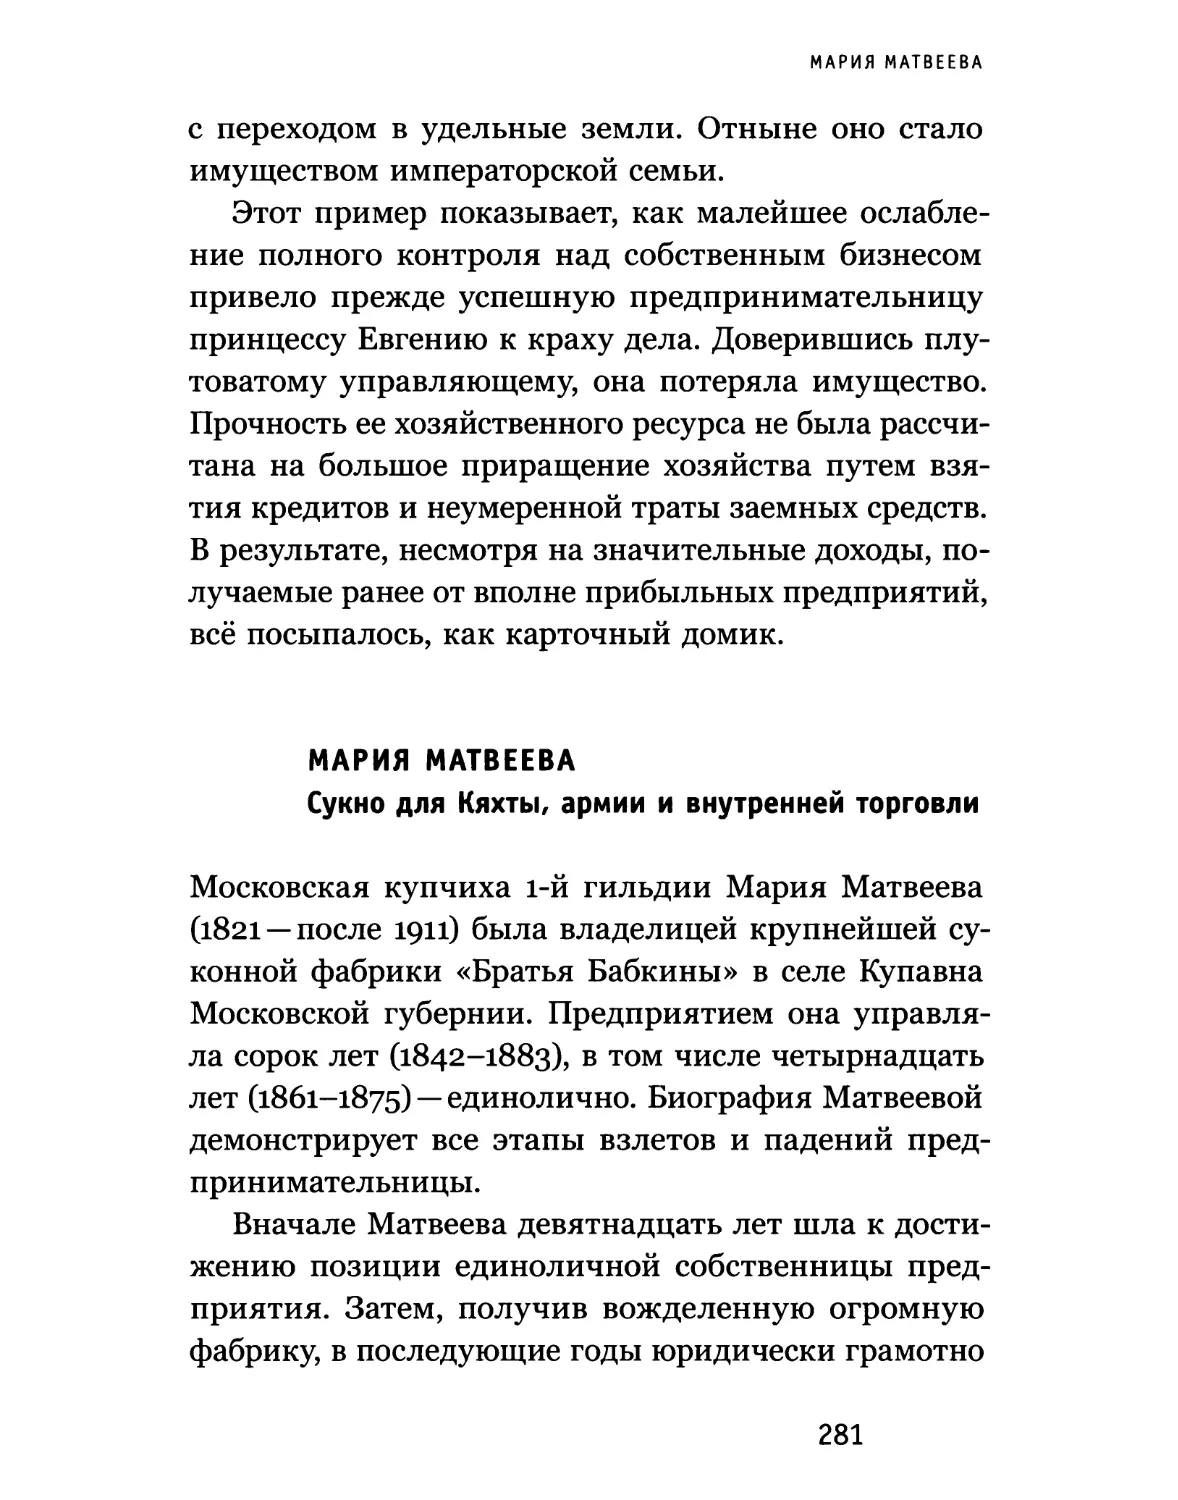 Мария Матвеева. Сукно для Кяхты, армии и внутренней торговли